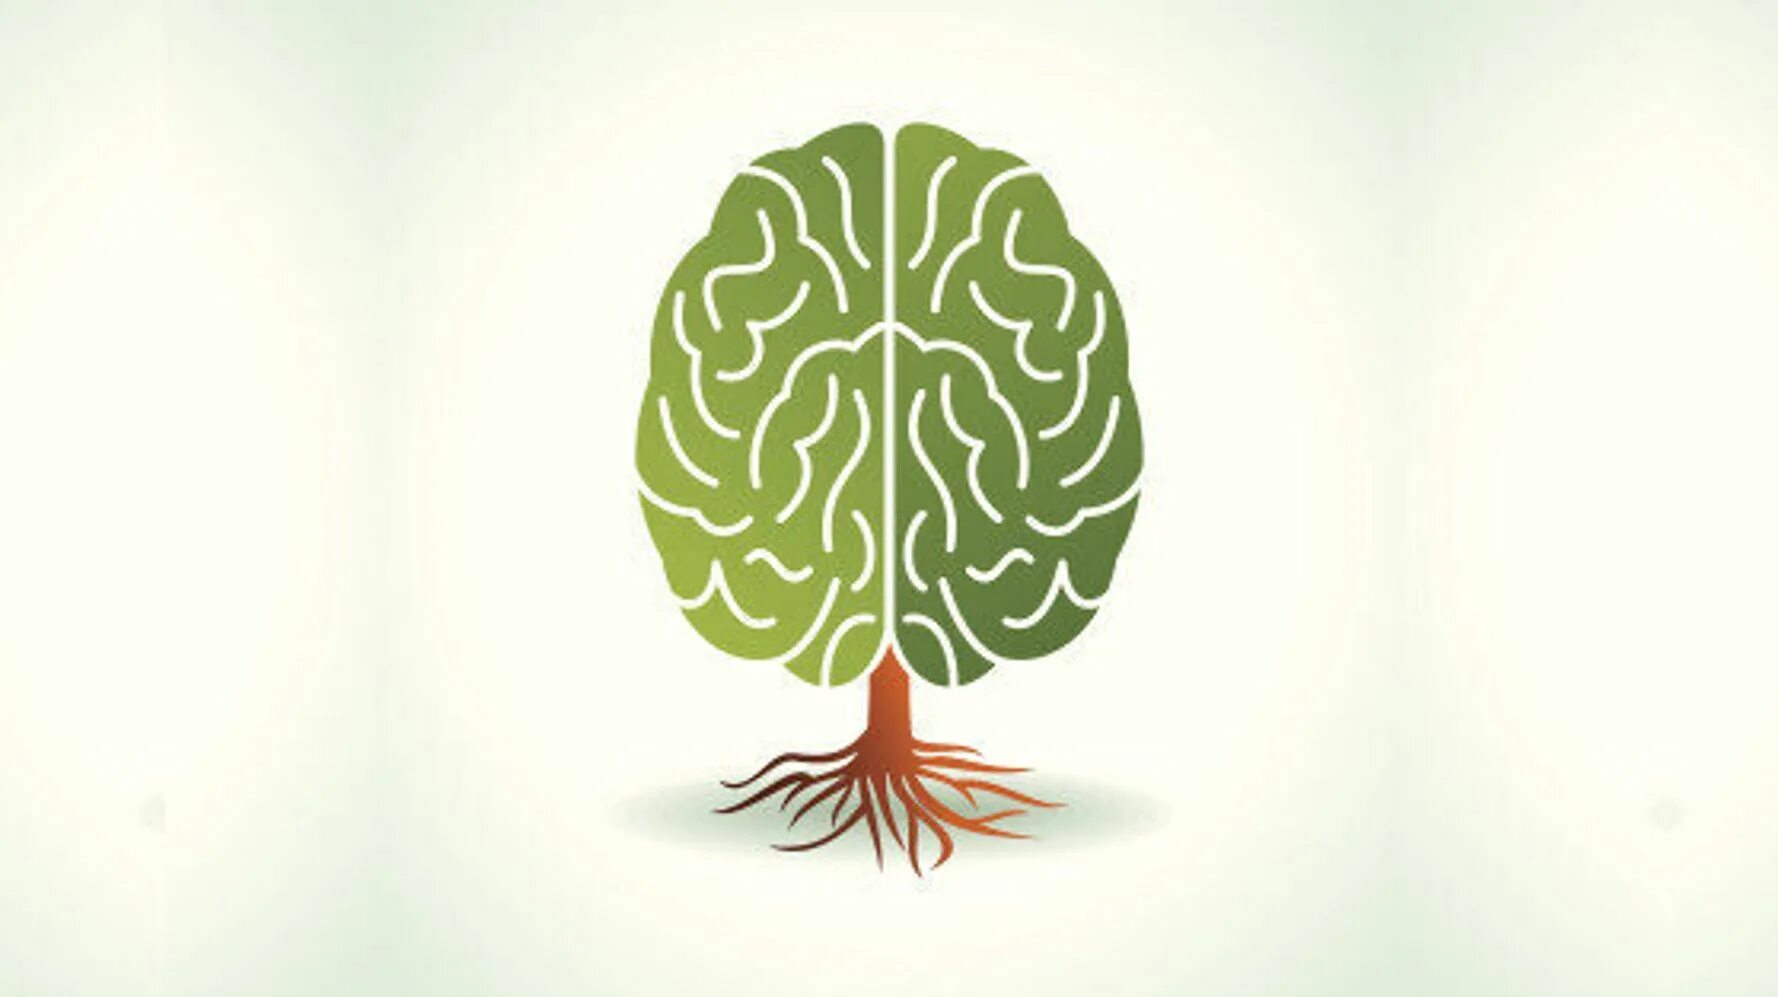 Brain life. Фитнес для мозга дерево. Дерево с мозгами Твин пикс.